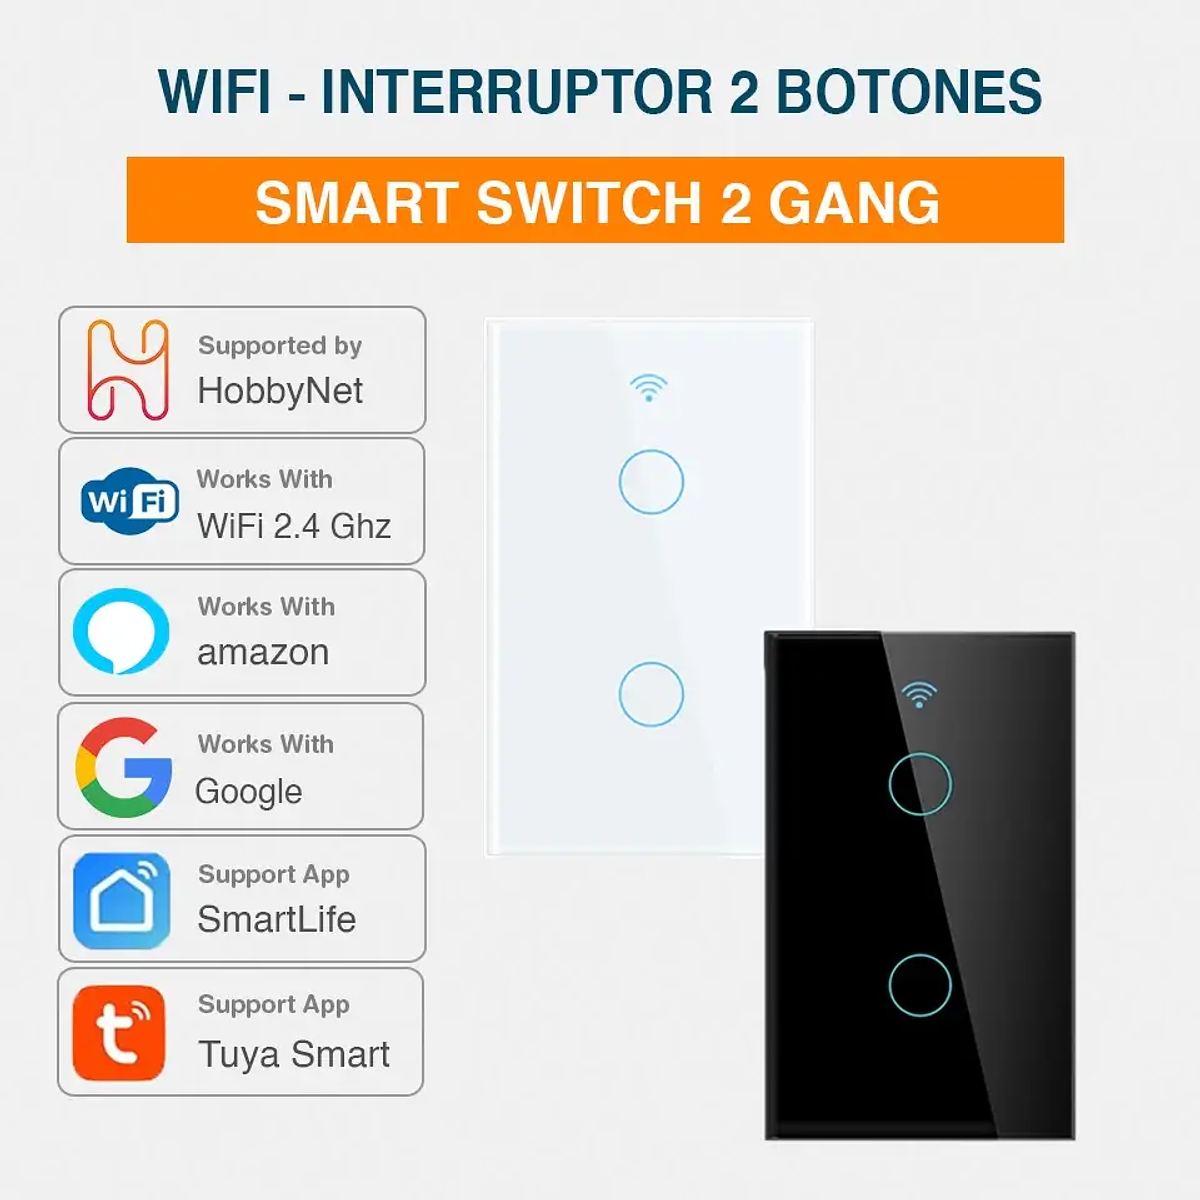 Interruptor de luz inteligente, botón de doble interruptor inteligente  WiFi, compatible con Alexa y Google Home, control remoto con función de